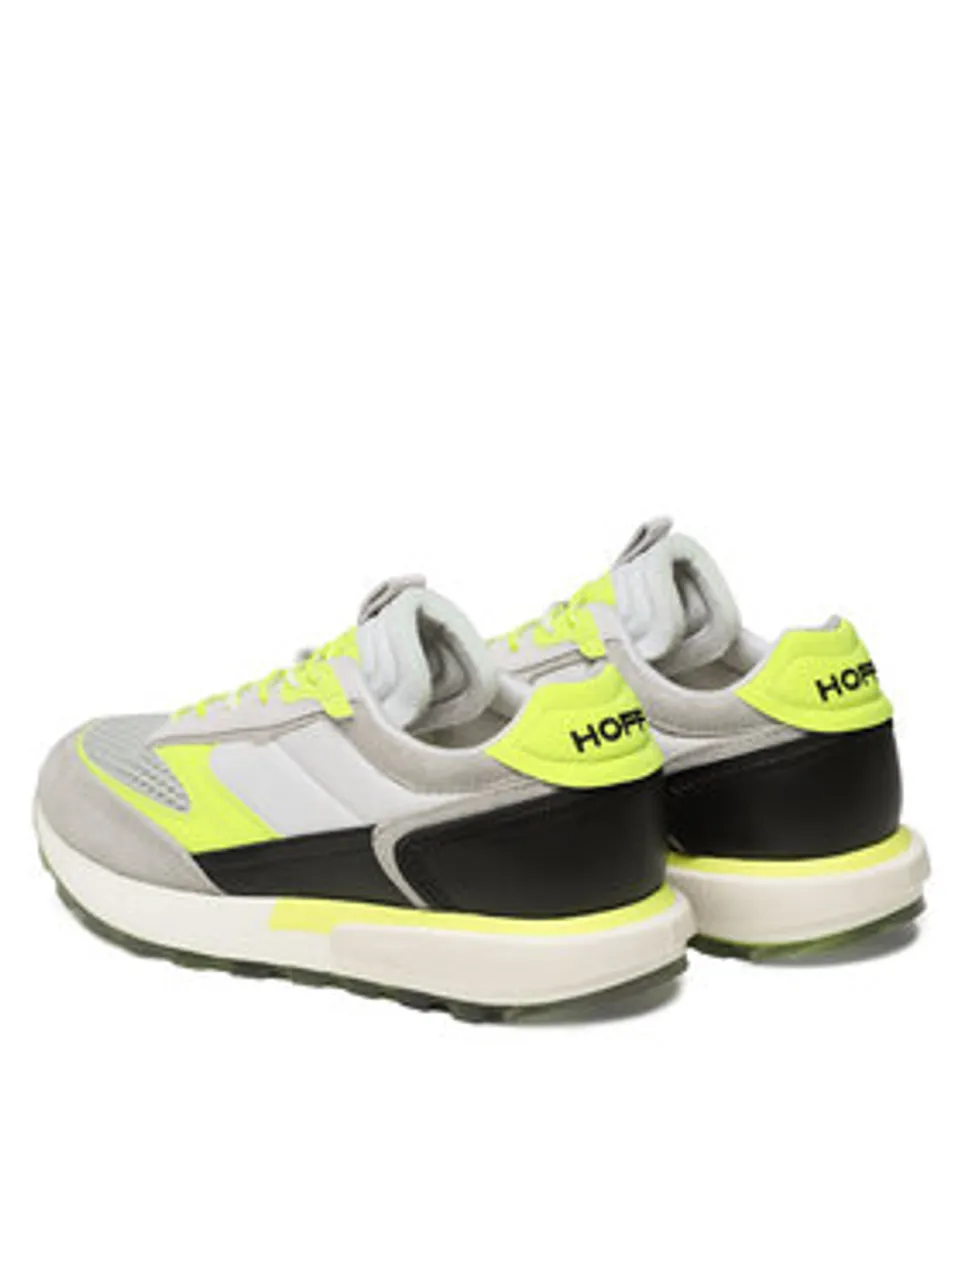 HOFF Sneakers Lamu 12307602 Grau